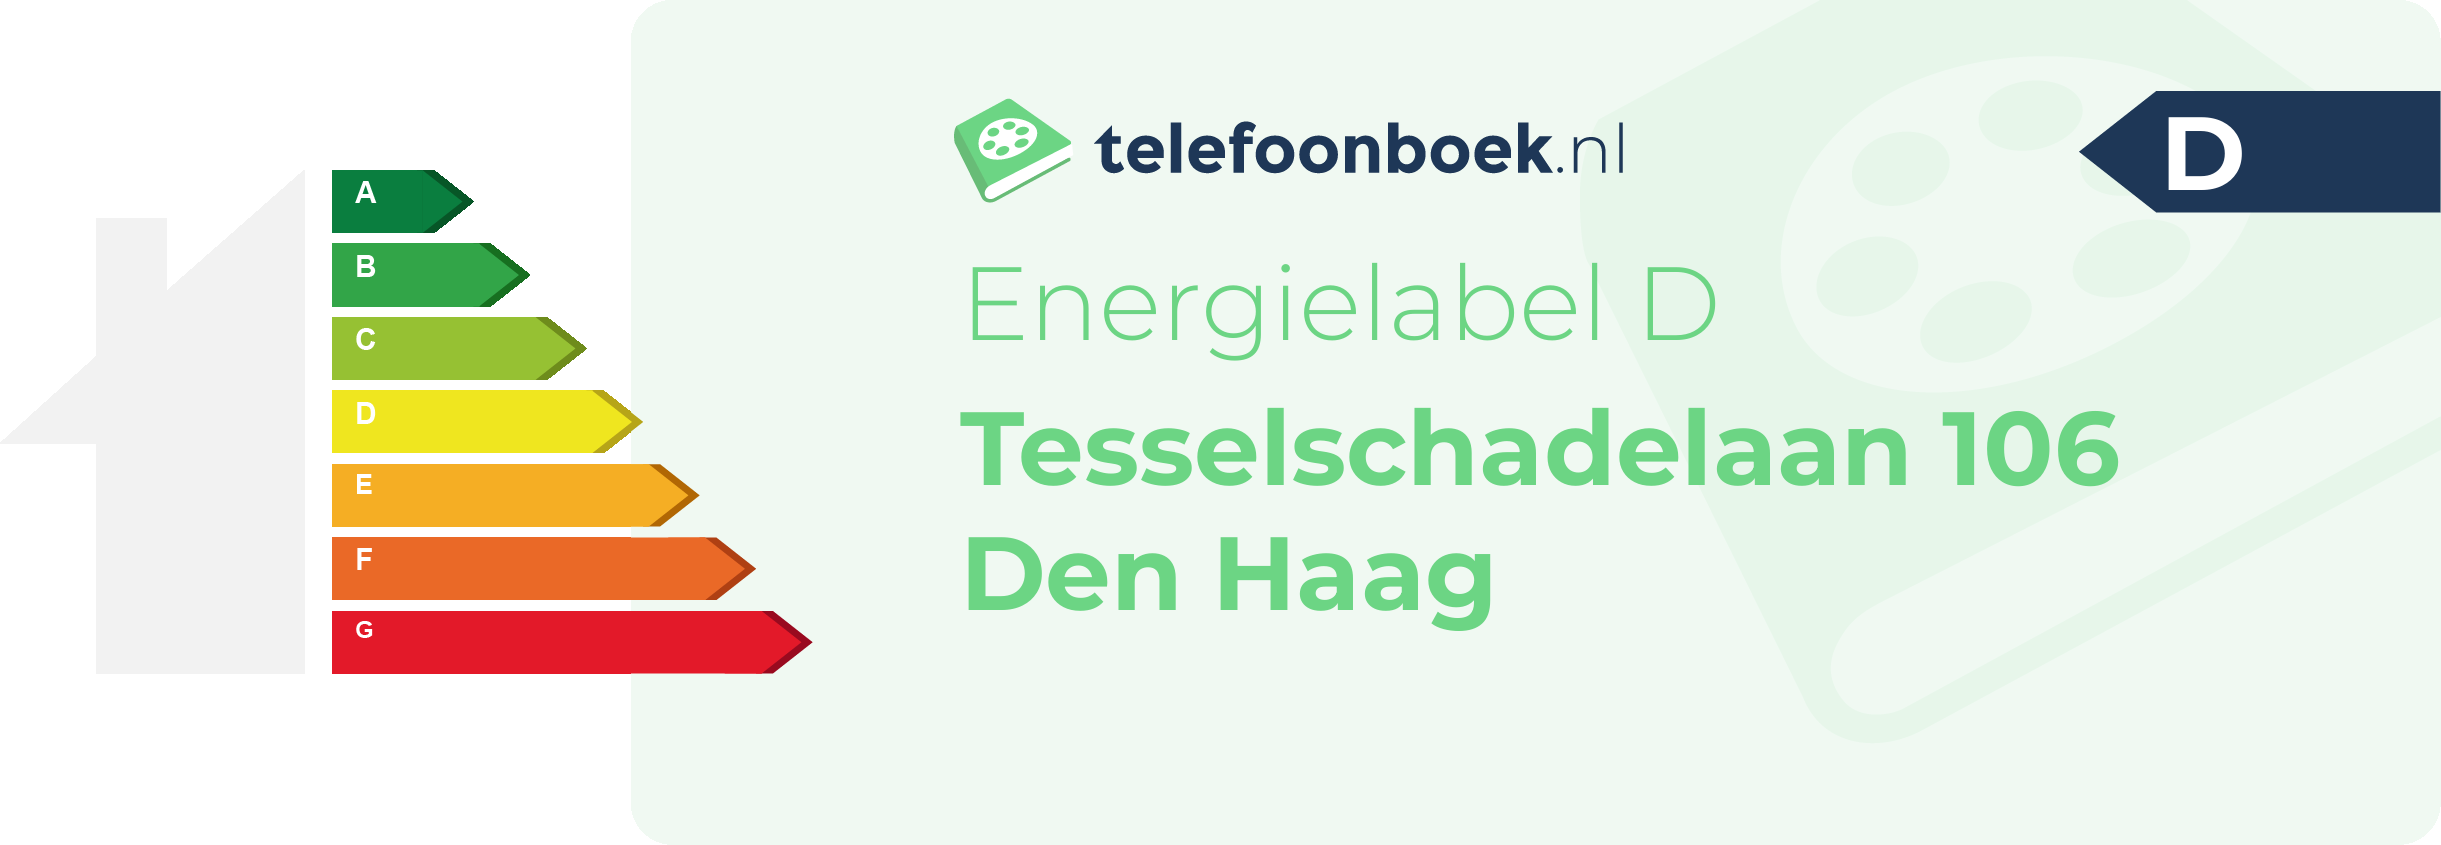 Energielabel Tesselschadelaan 106 Den Haag